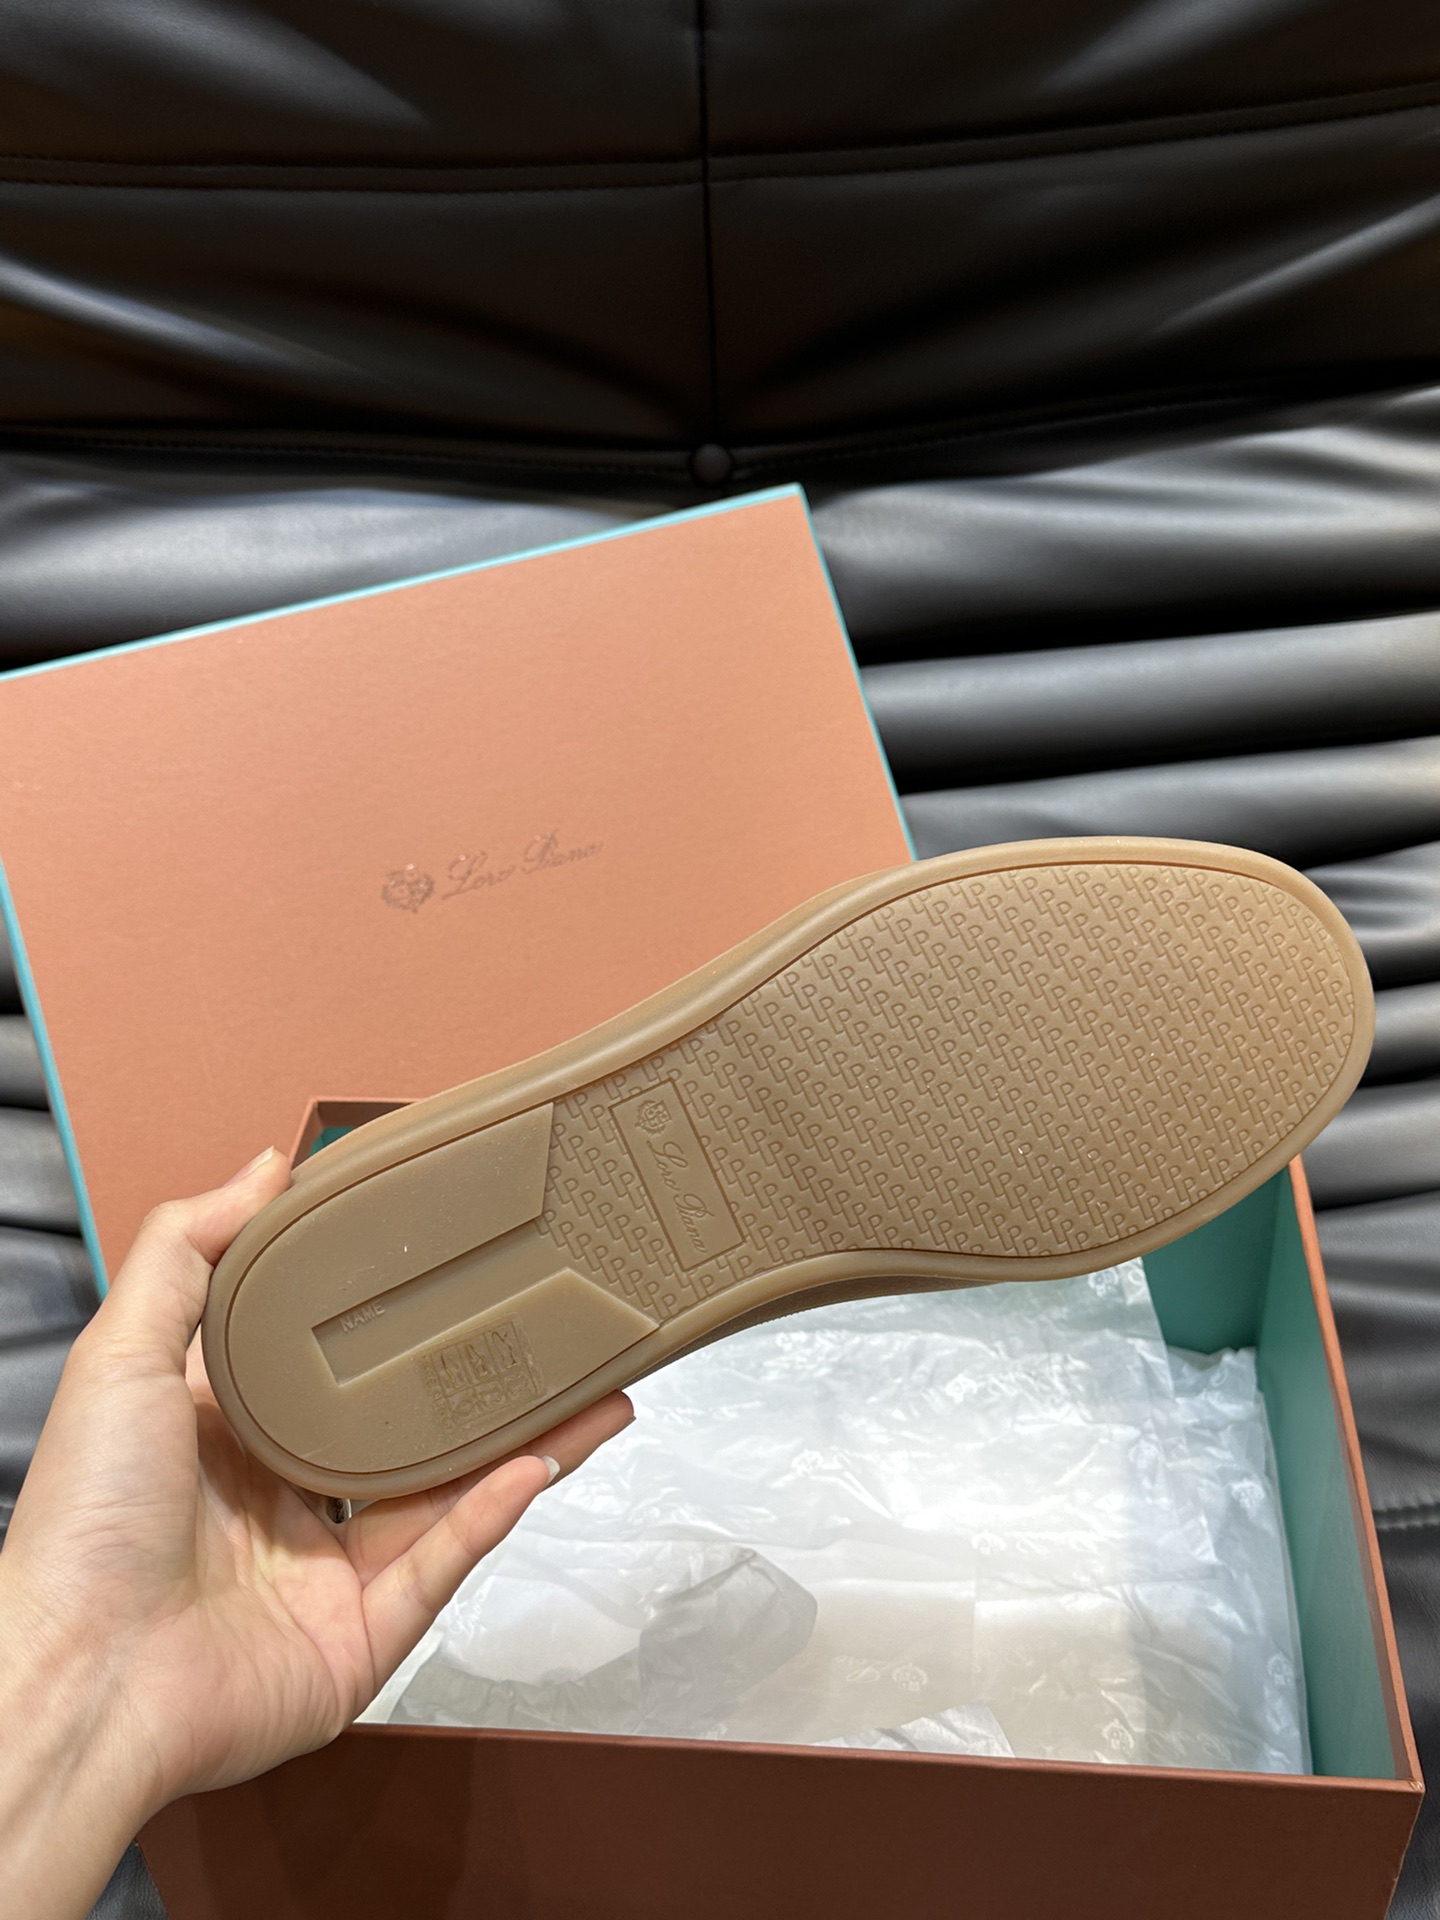 新款LP老钱风男士低帮休闲网球鞋LoroPiana高端系列推出了以柔软牛皮制成的运动鞋款式天然材料的透气